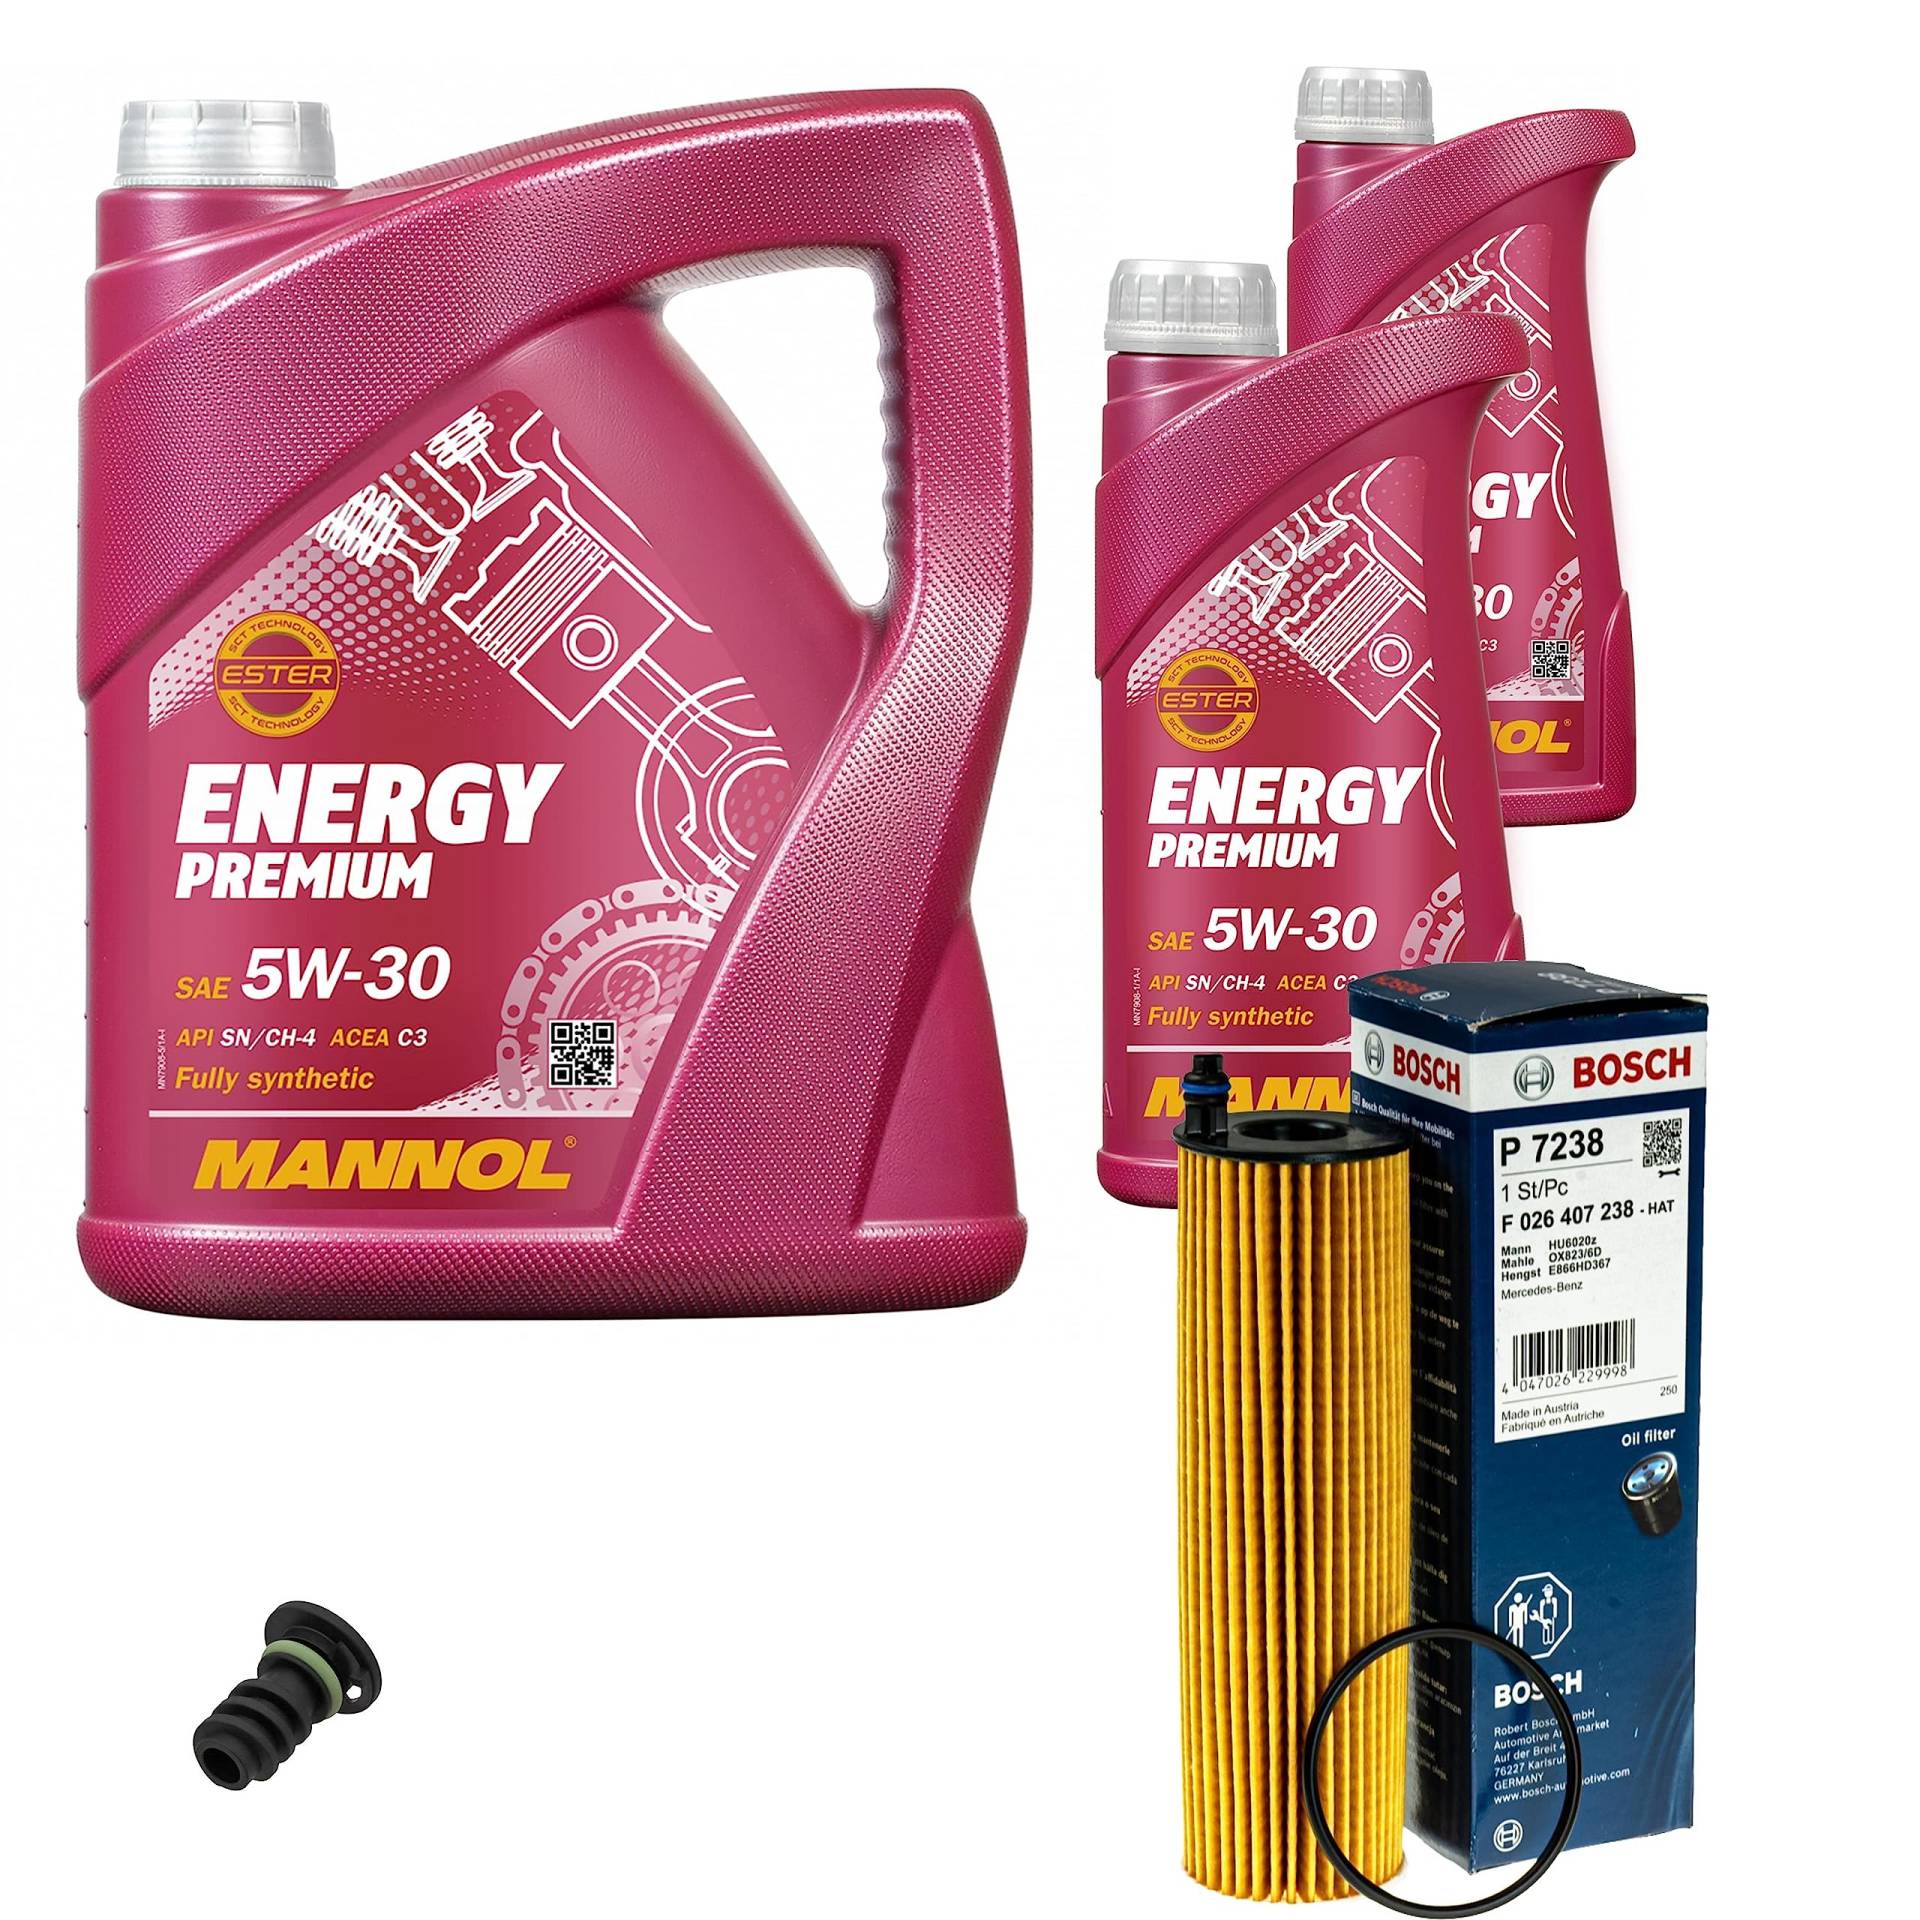 Inspektionspaket Wartungspaket Filterset mit 7 L Motoröl Energy Premium 5W-30, Ölfilter, Verschlussschraube von EISENFELS